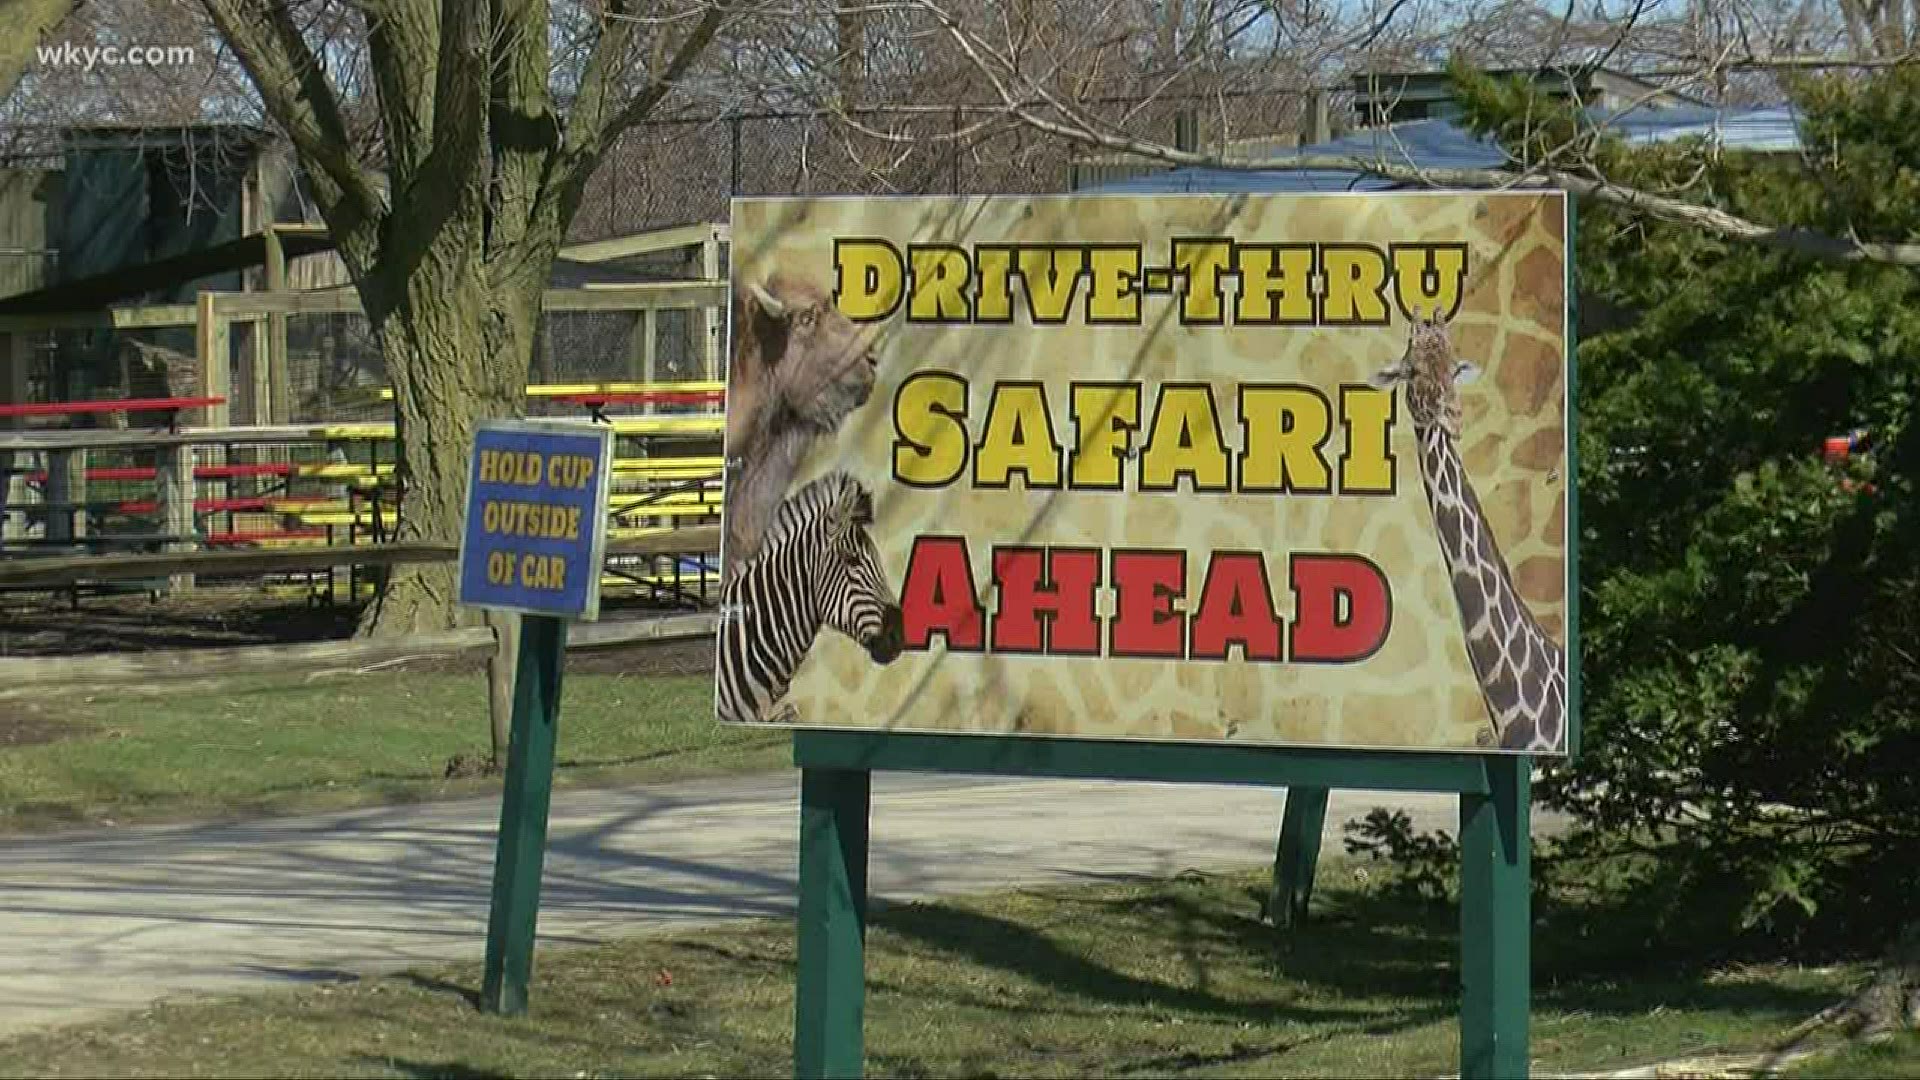 african safari port clinton ohio prices